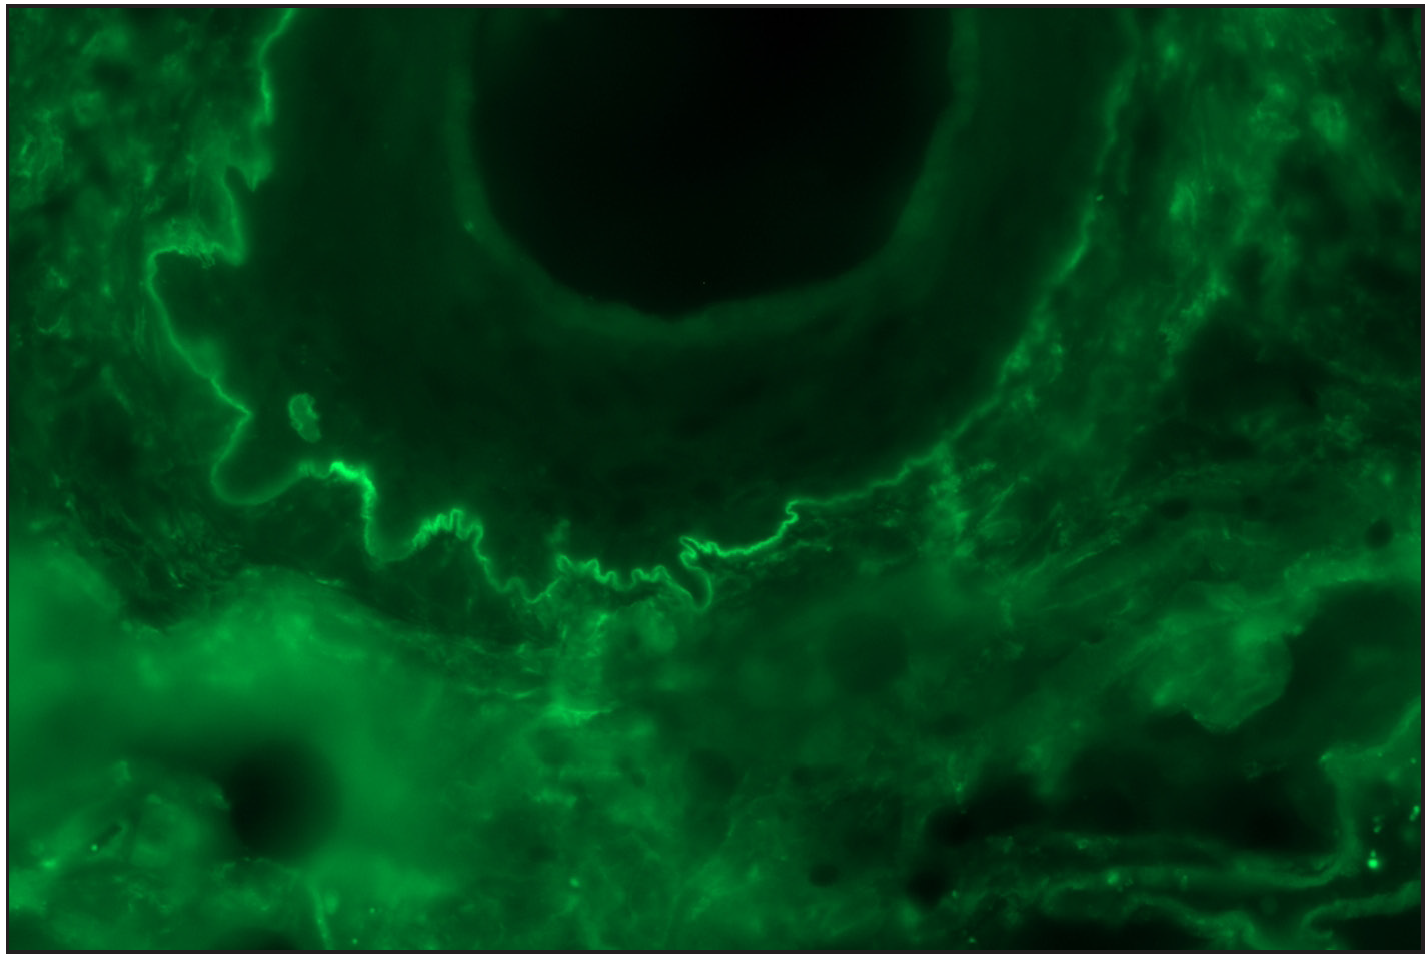 ‘n’ serration pattern along hair follicle basement membrane on DIF in bullous pemphigoid (fluorescein isothiocyanate, ×400)